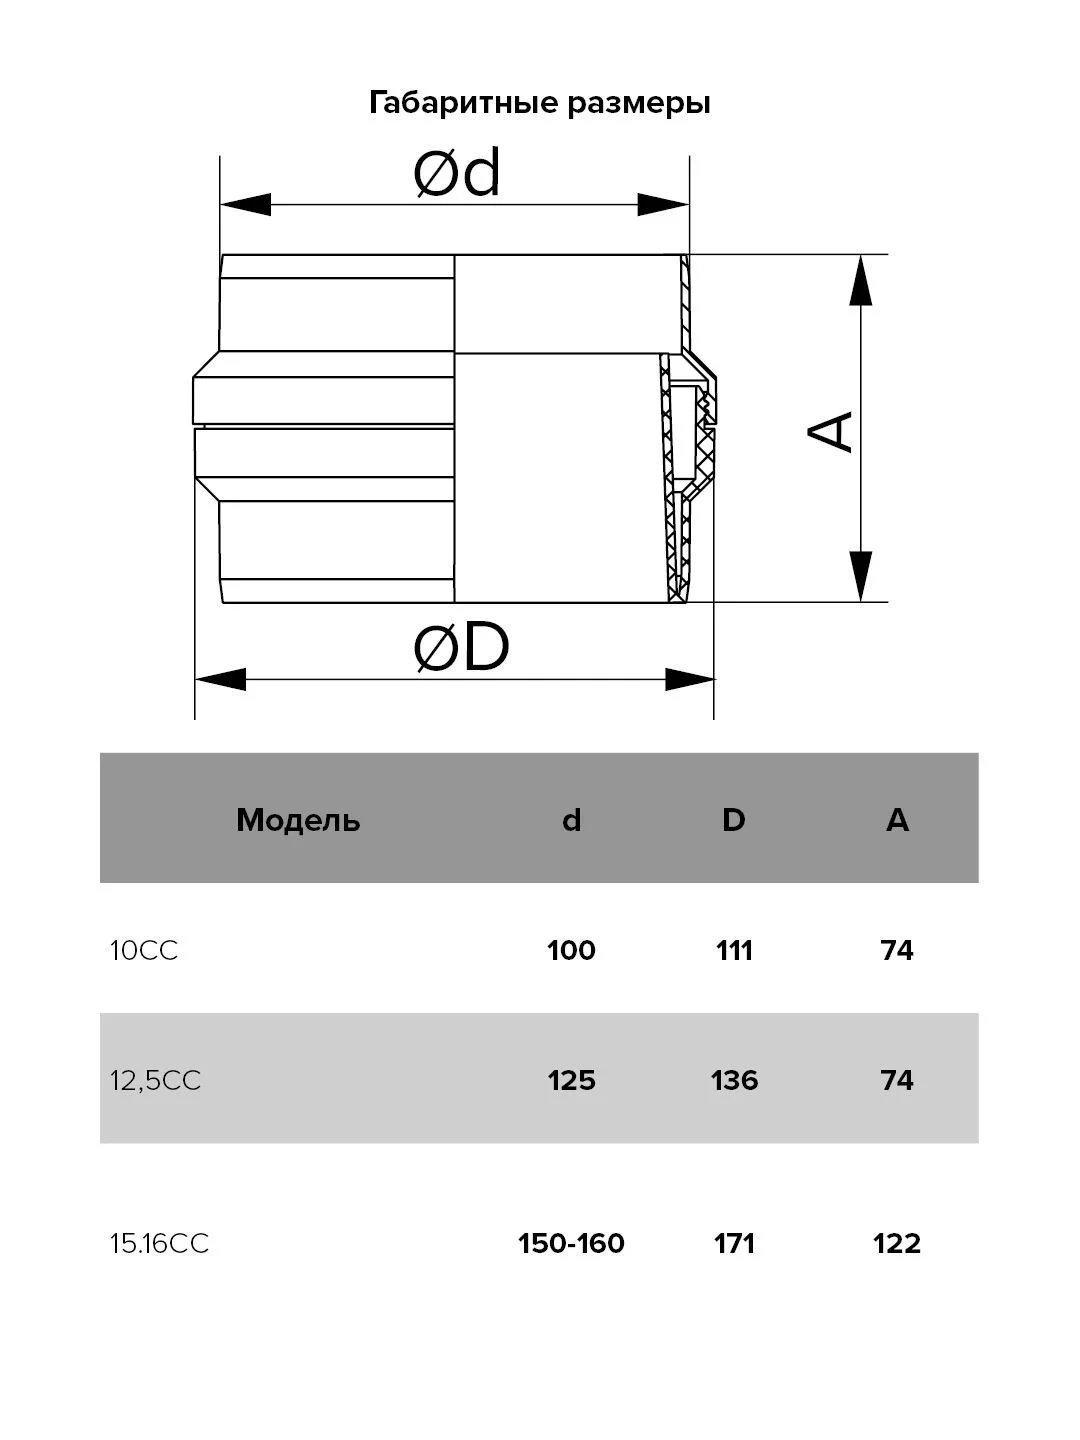 Коллектор для сбора конденсата D125 (12,5CC)